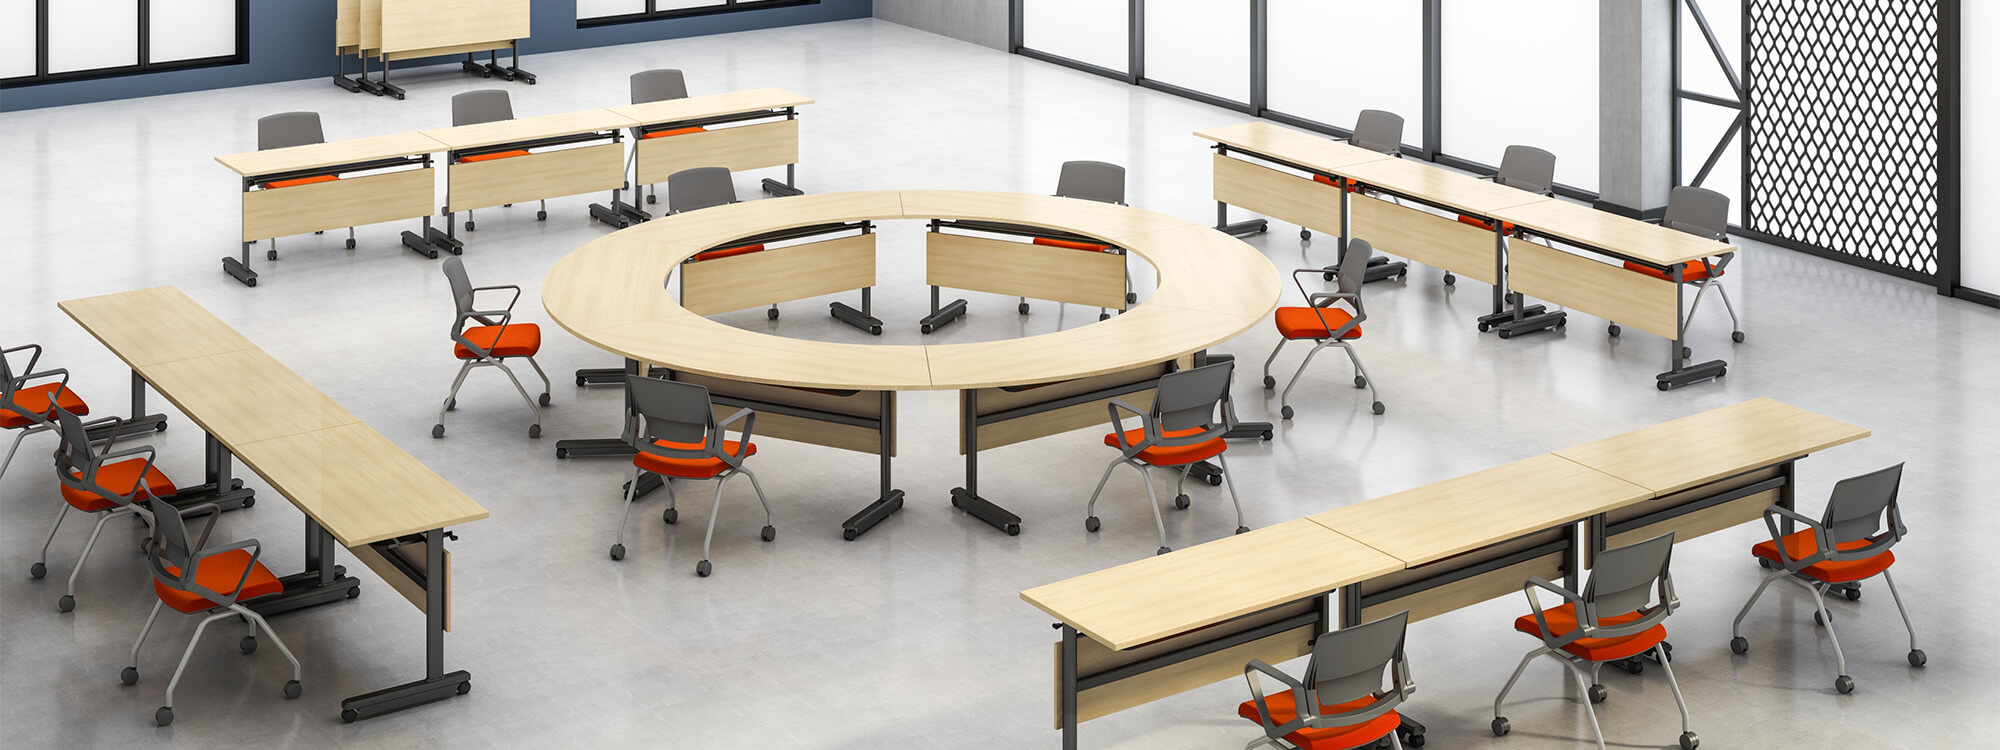 Peut être composé de tables de formation en bois rondes et rectangulaires et de bureaux mobiles